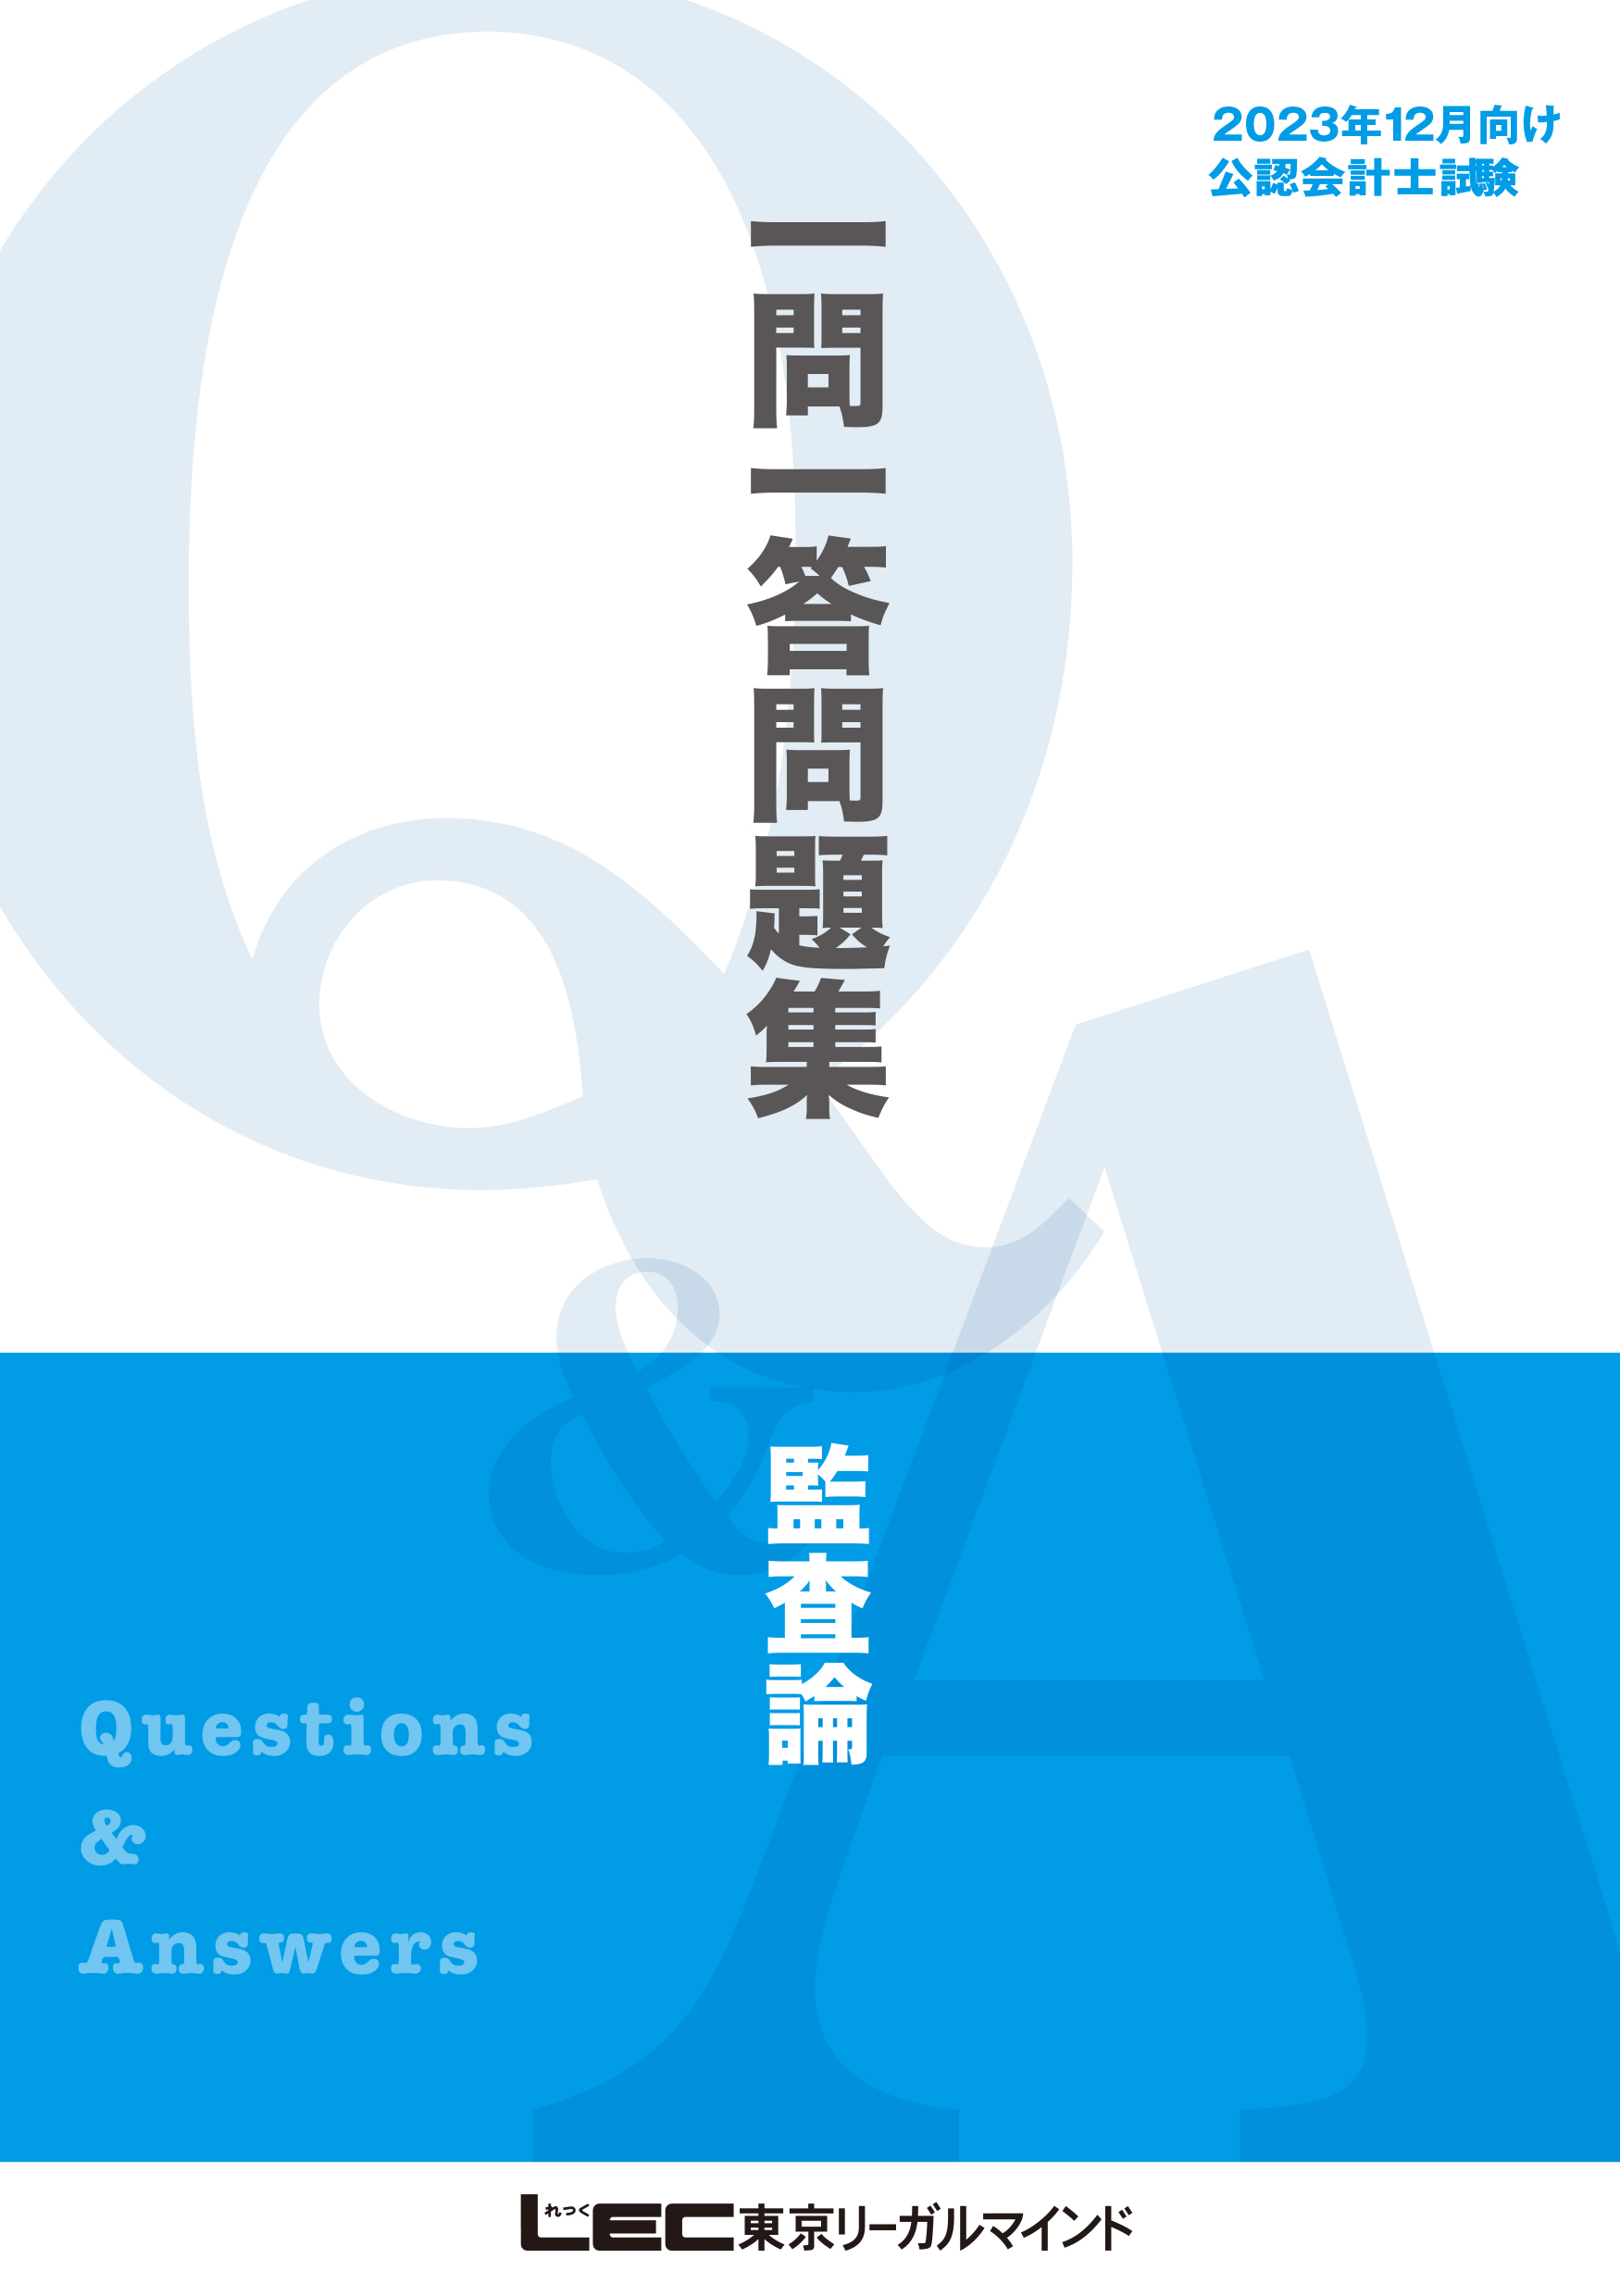 2023年12月向け公認会計士試験 一問一答問題集 監査論 - 東京リーガル